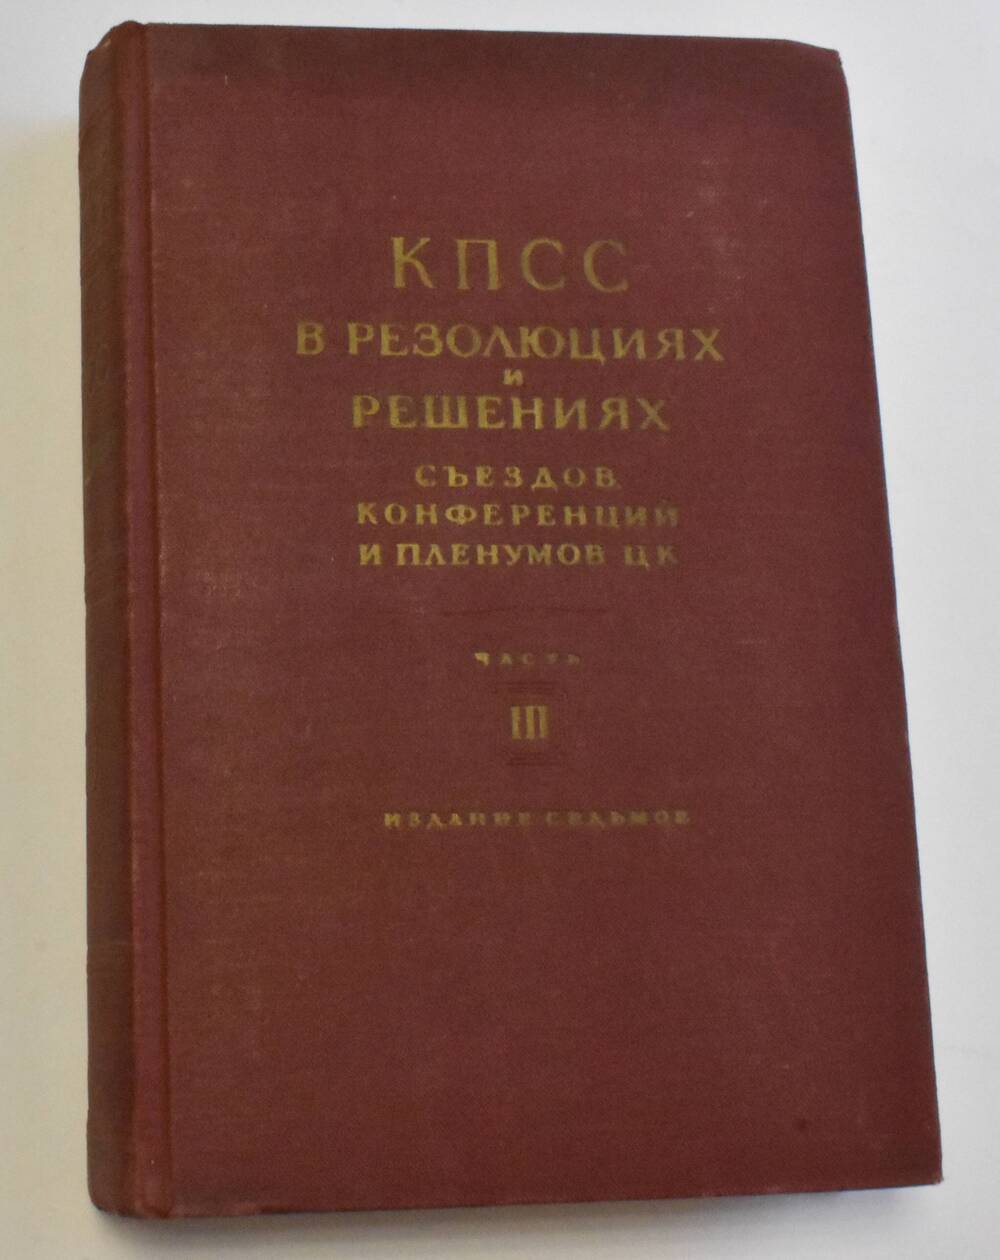 Книга Коммунистическая партия Советского Союза (1898-1954)Часть 3
Государственное издательство политической литературы 1954